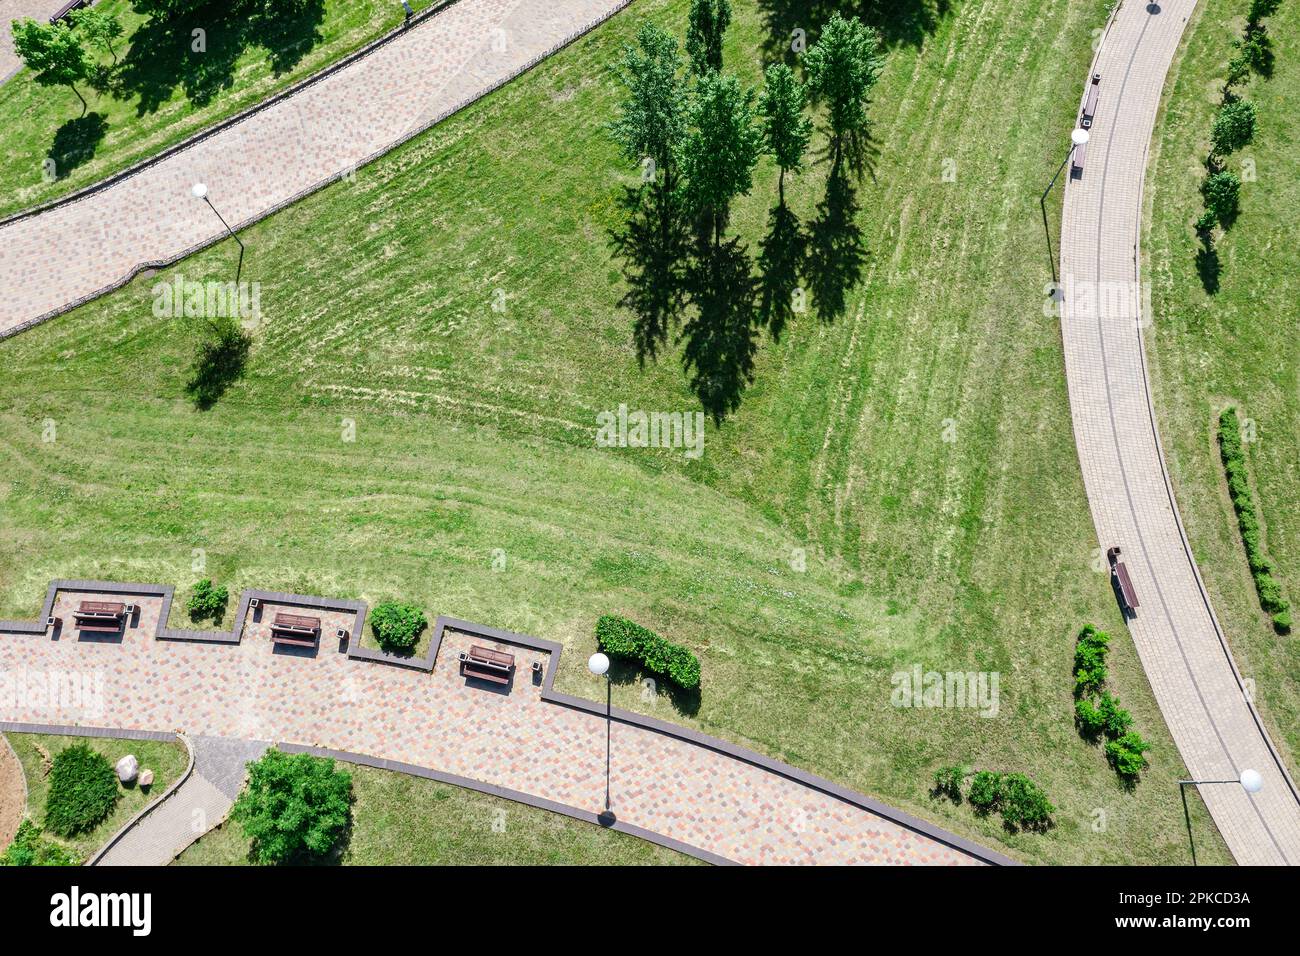 sentieri del parco cittadino. prato verde, alberi, panchine del parco e lanterne. foto drone dall'alto. Foto Stock